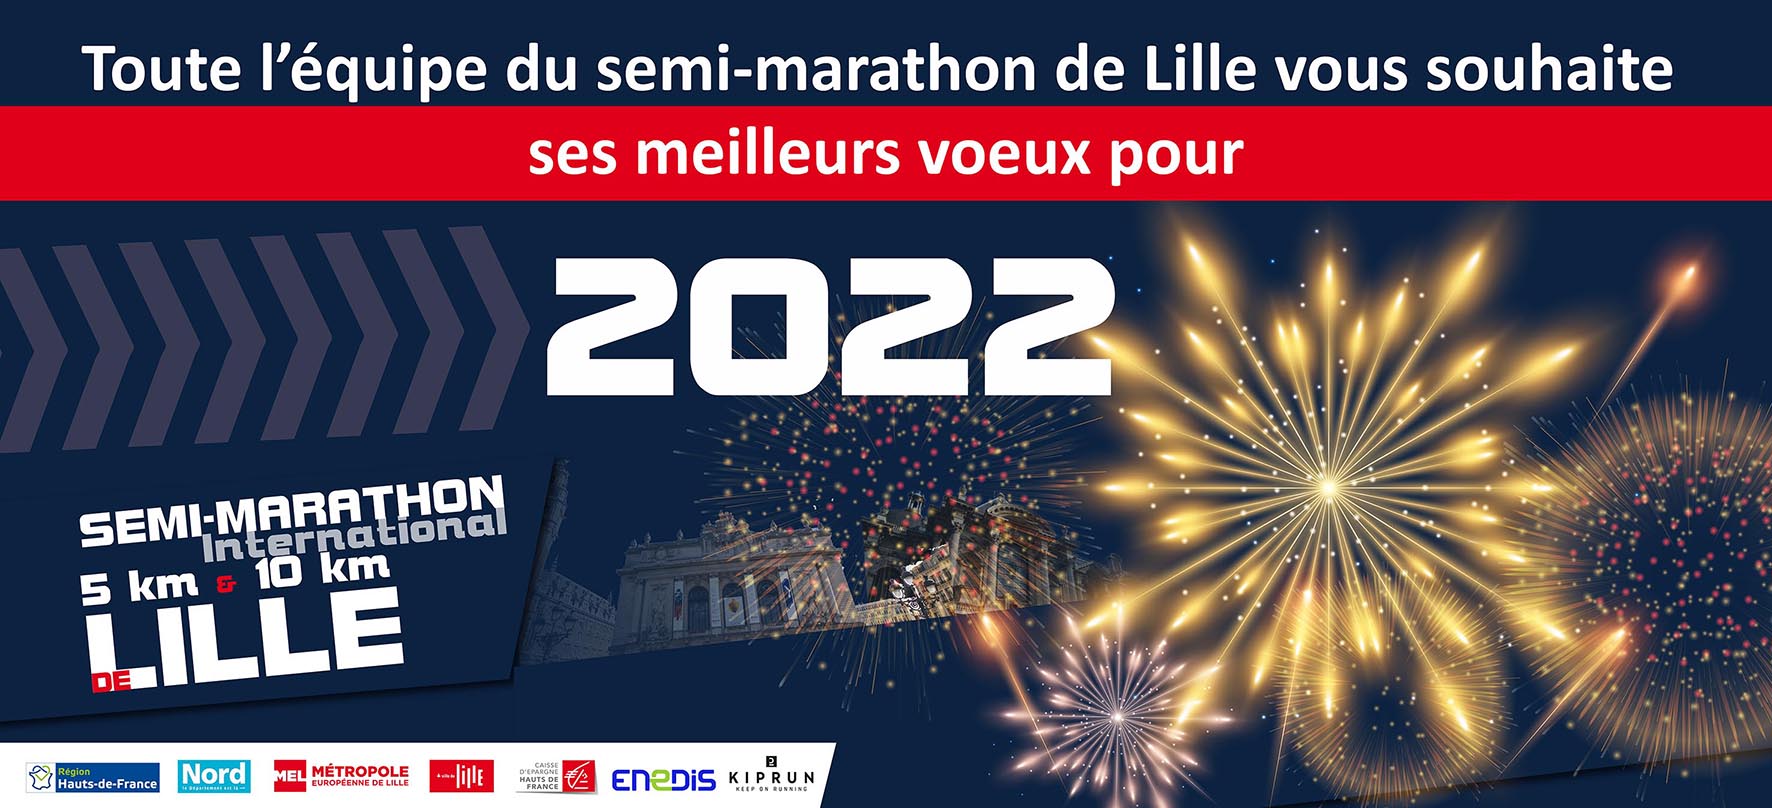 MEILLEURS VOEUX 2022 !